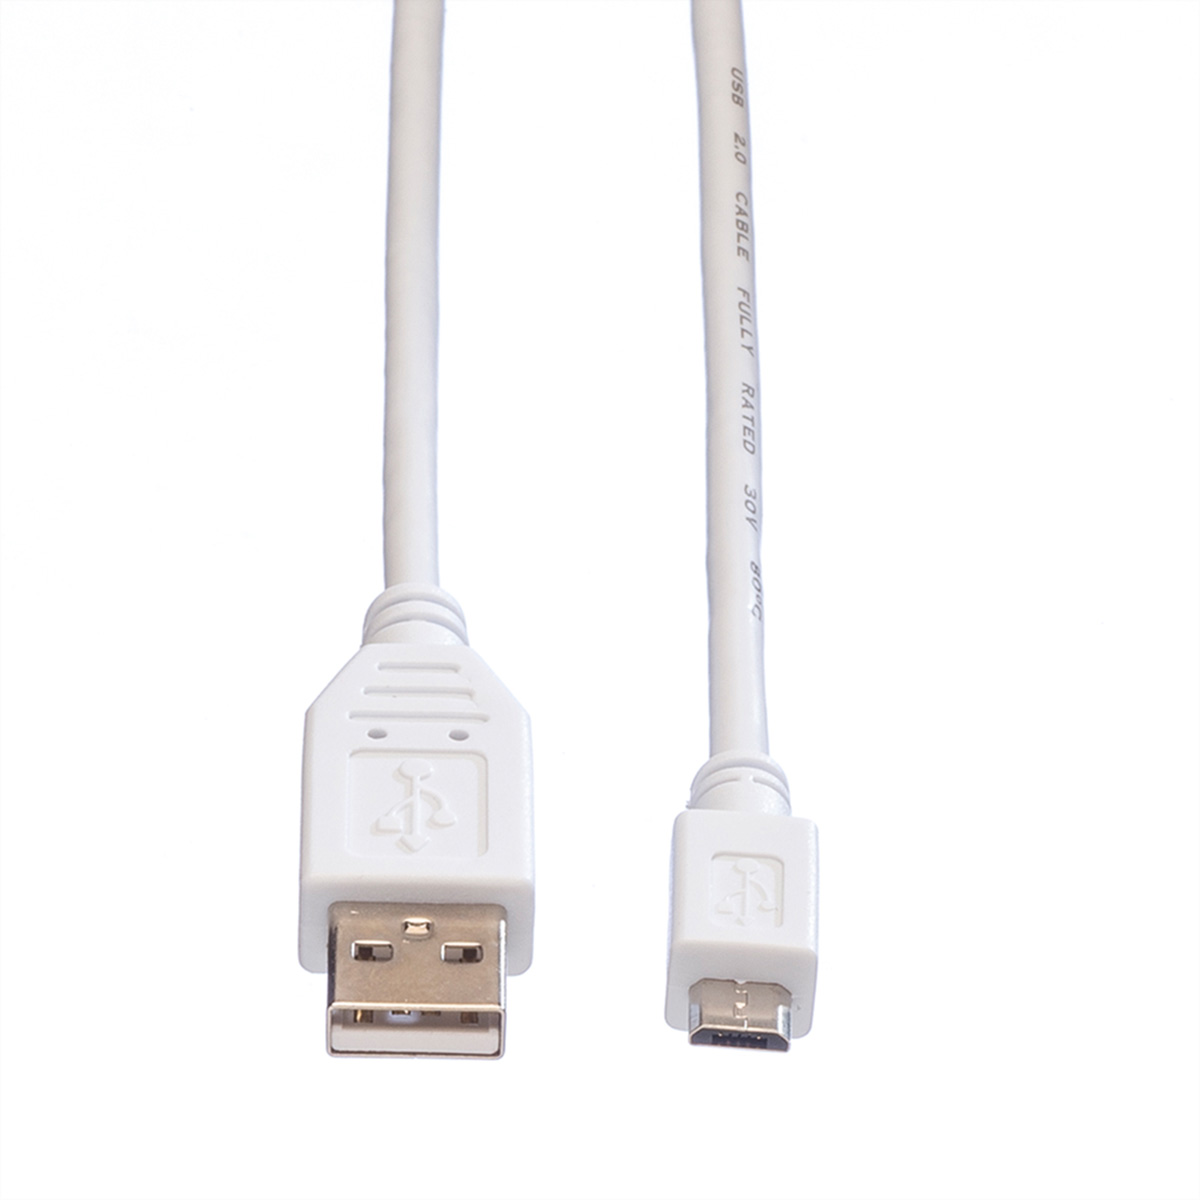 Kabel Micro Kabel 2.0 USB VALUE USB 2.0